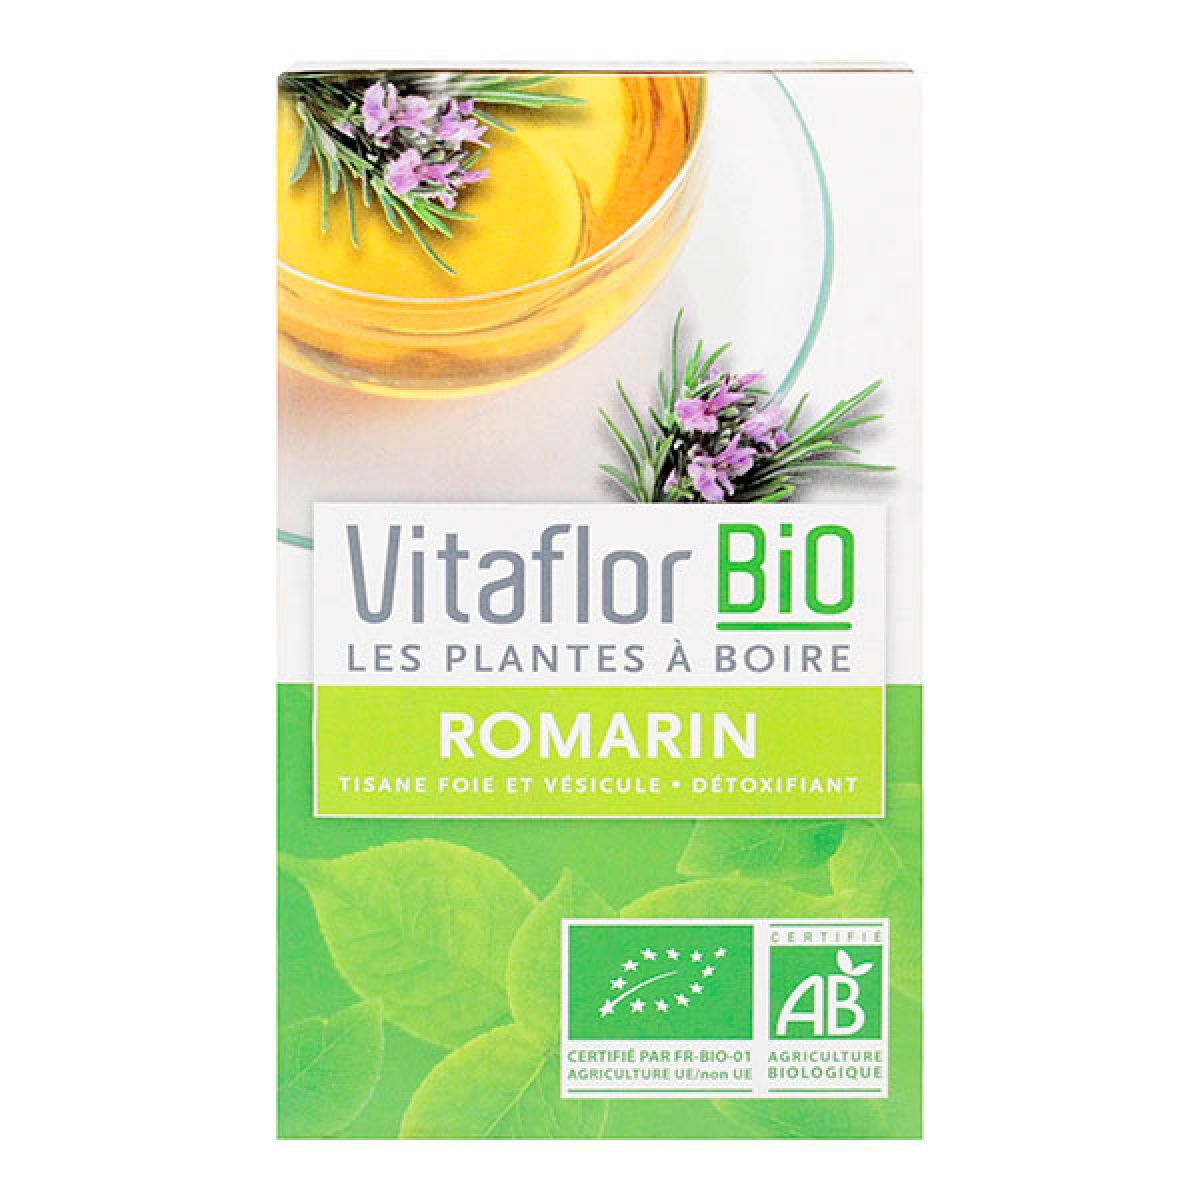 la tisane romarin vitaflor est utilisée pour le foie et vésicule